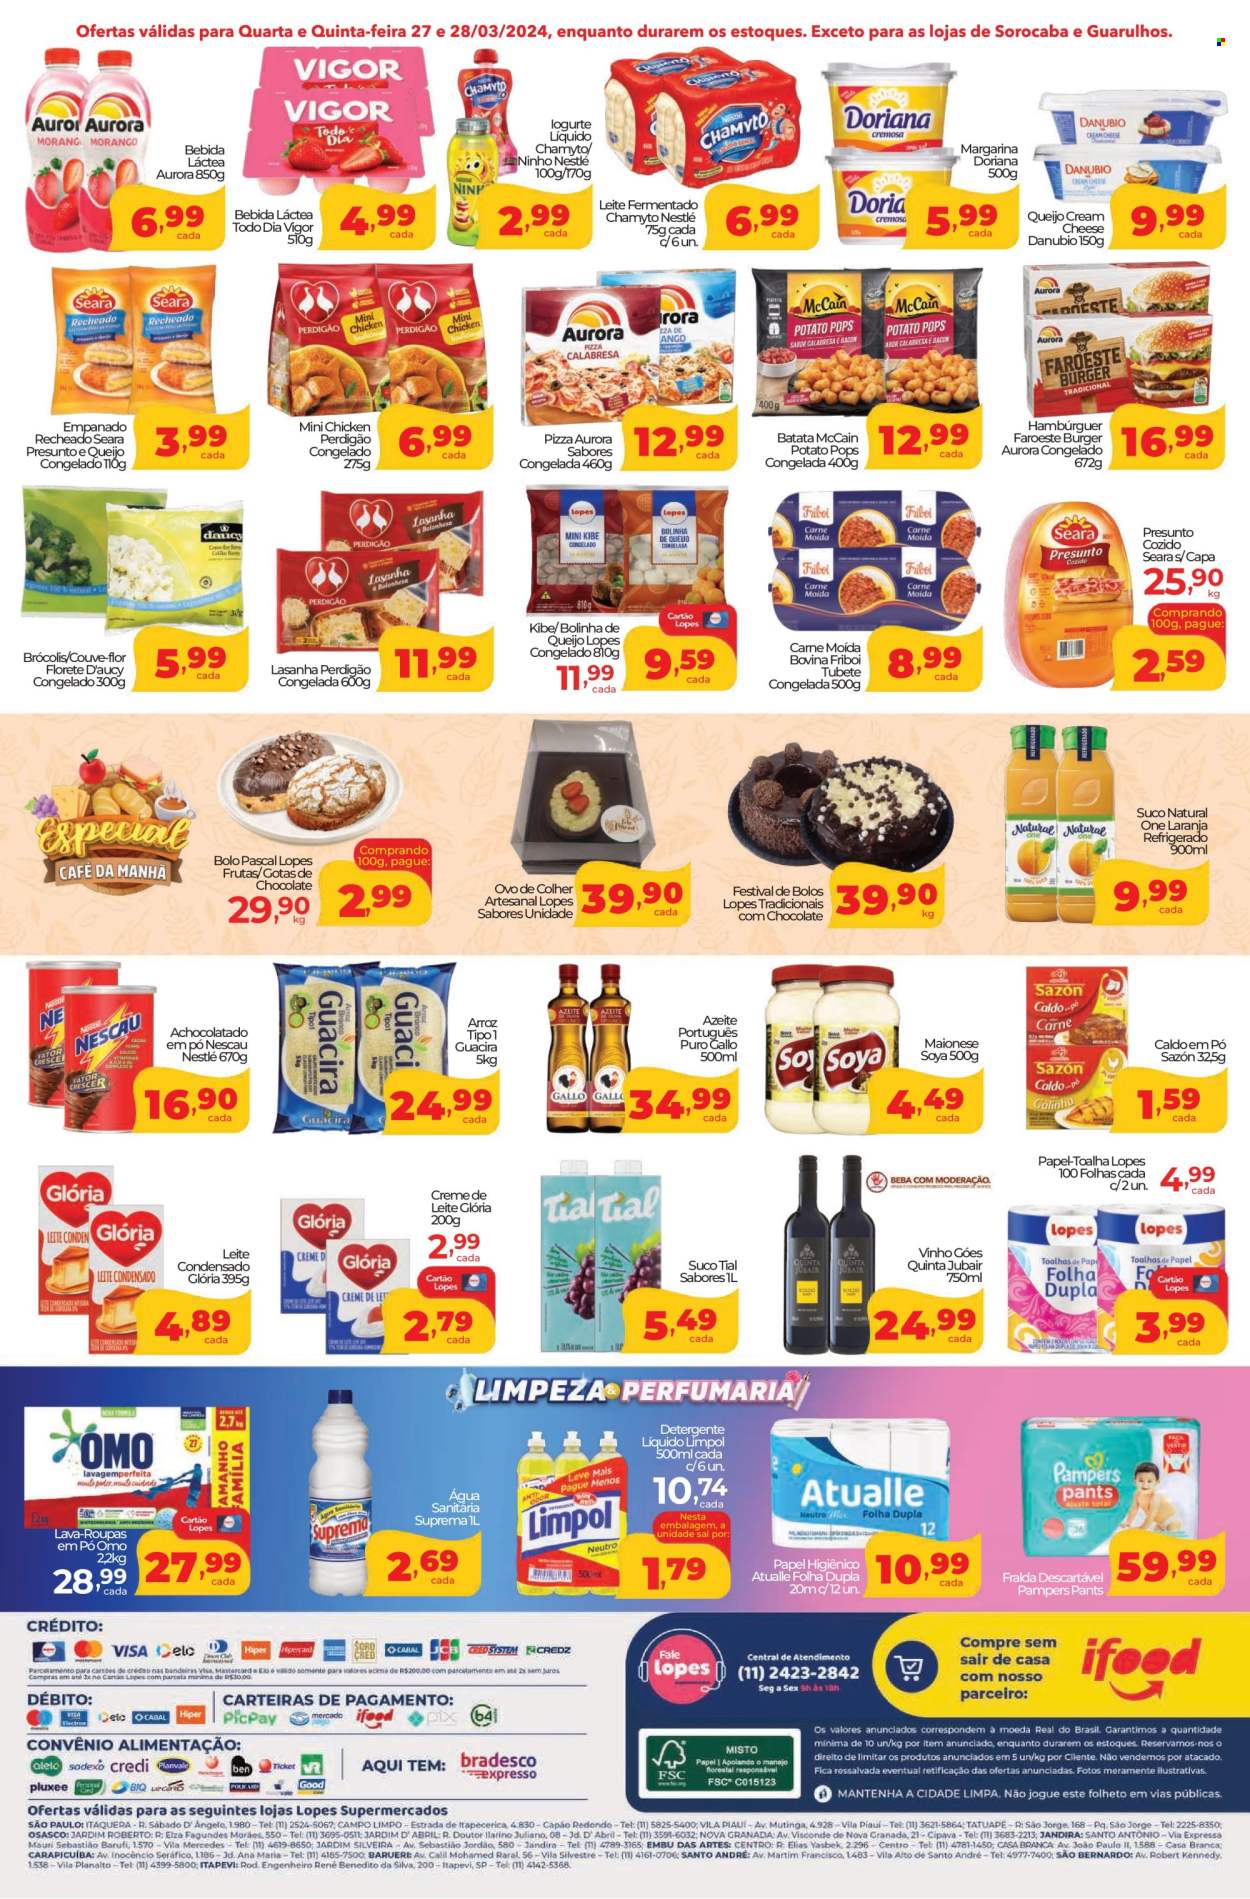 Encarte Lopes Supermercados  - 27.03.2024 - 28.03.2024.